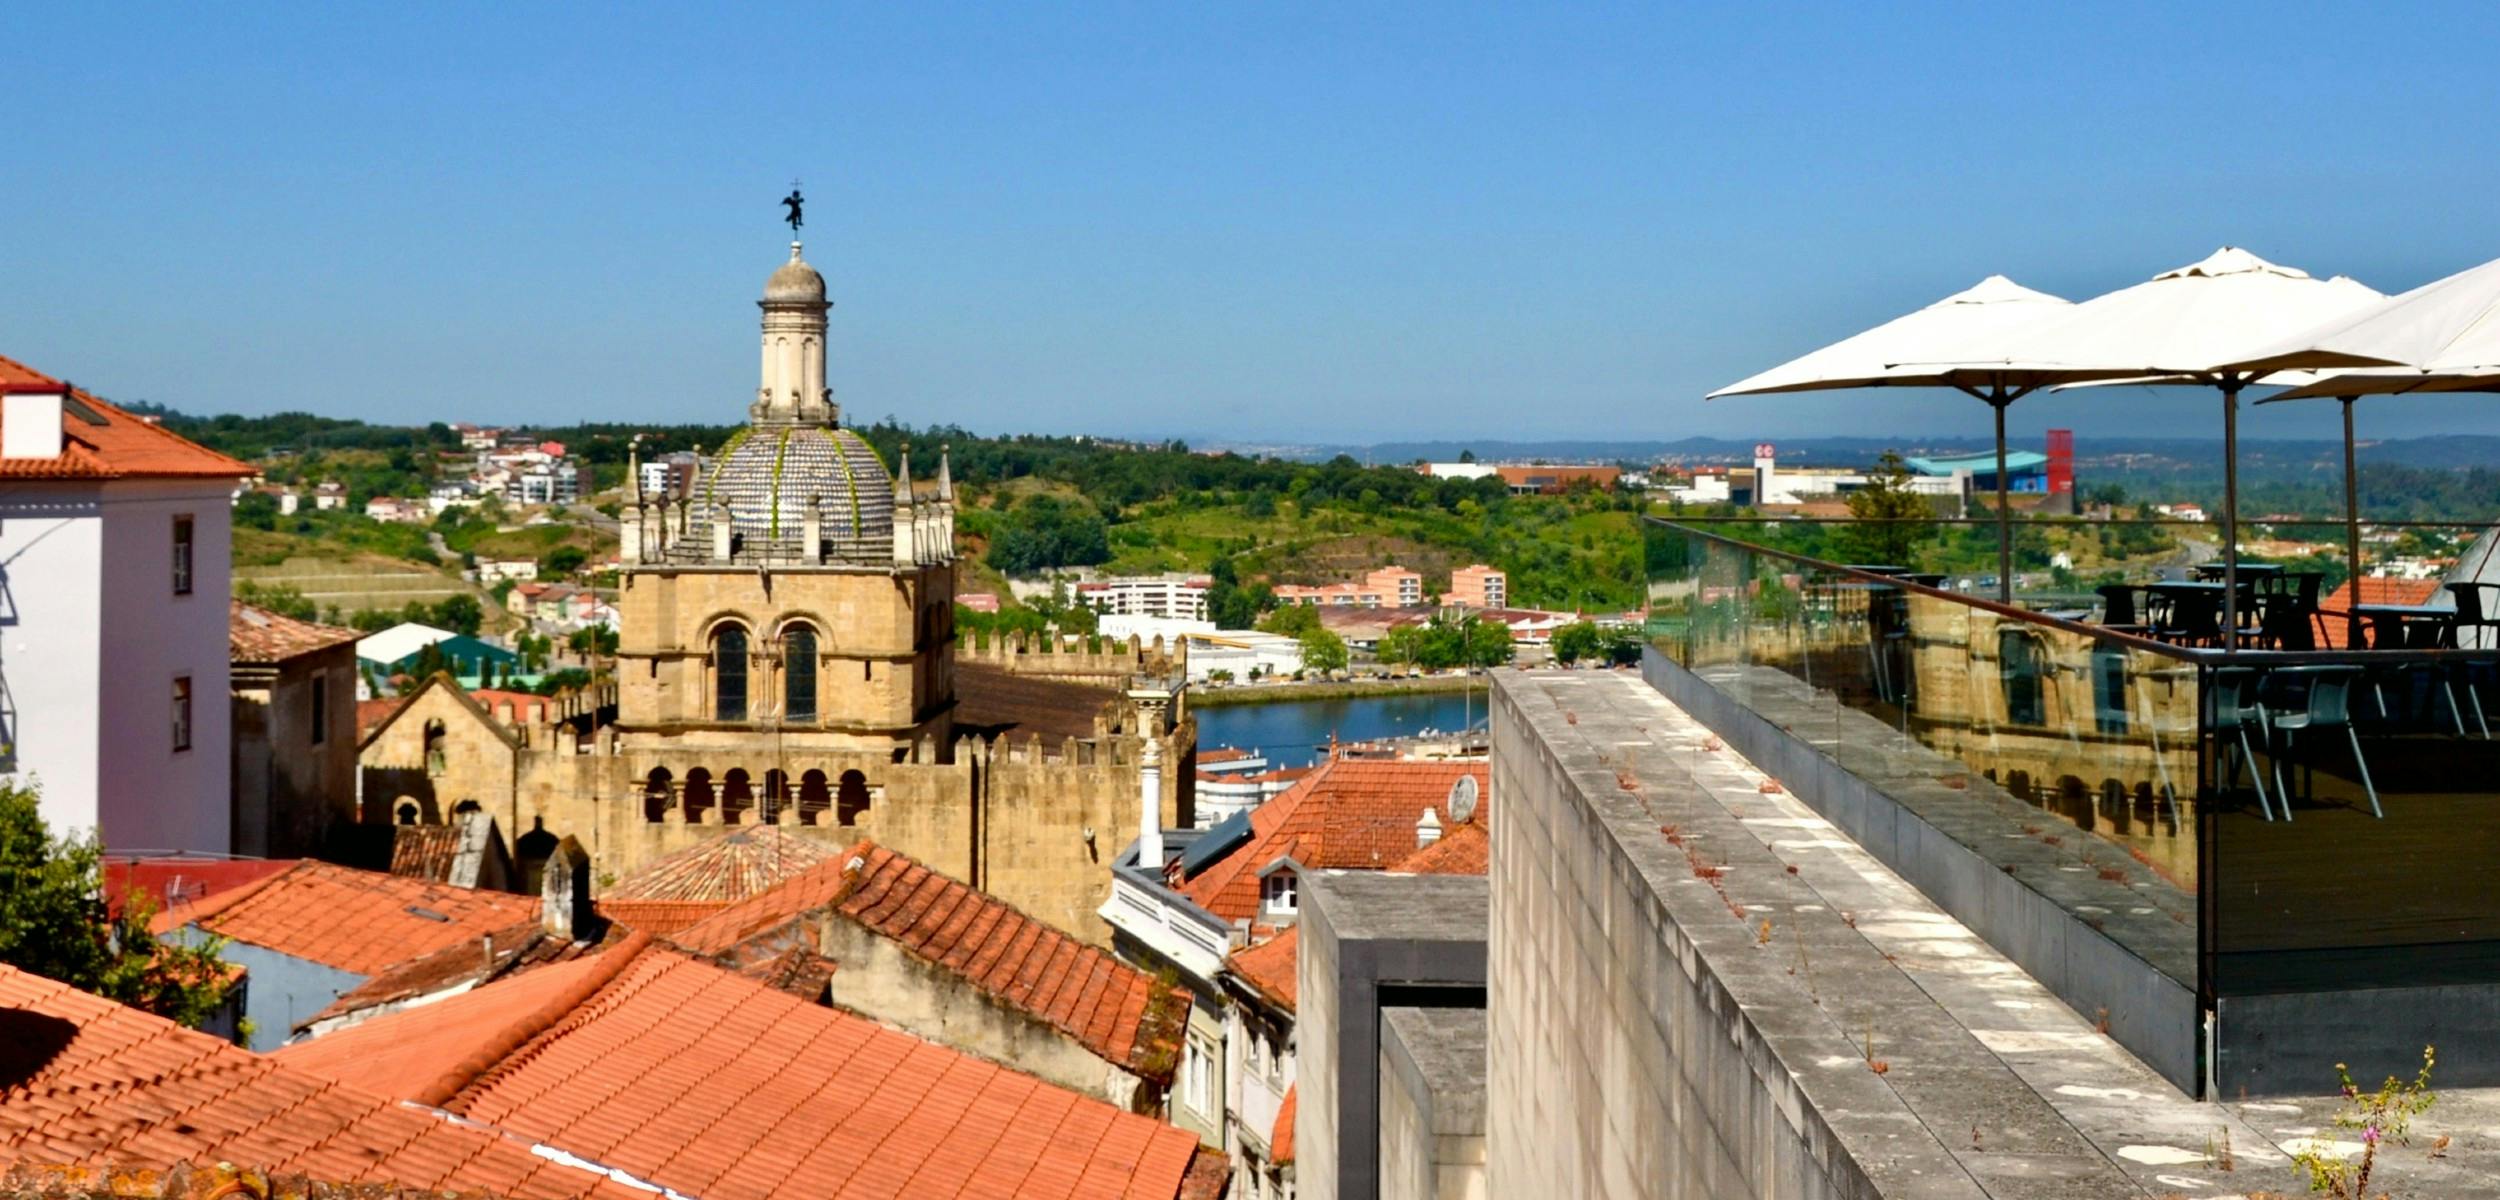 Caminhada de descoberta autoguiada das catedrais de Coimbra e dos copos-de-leite